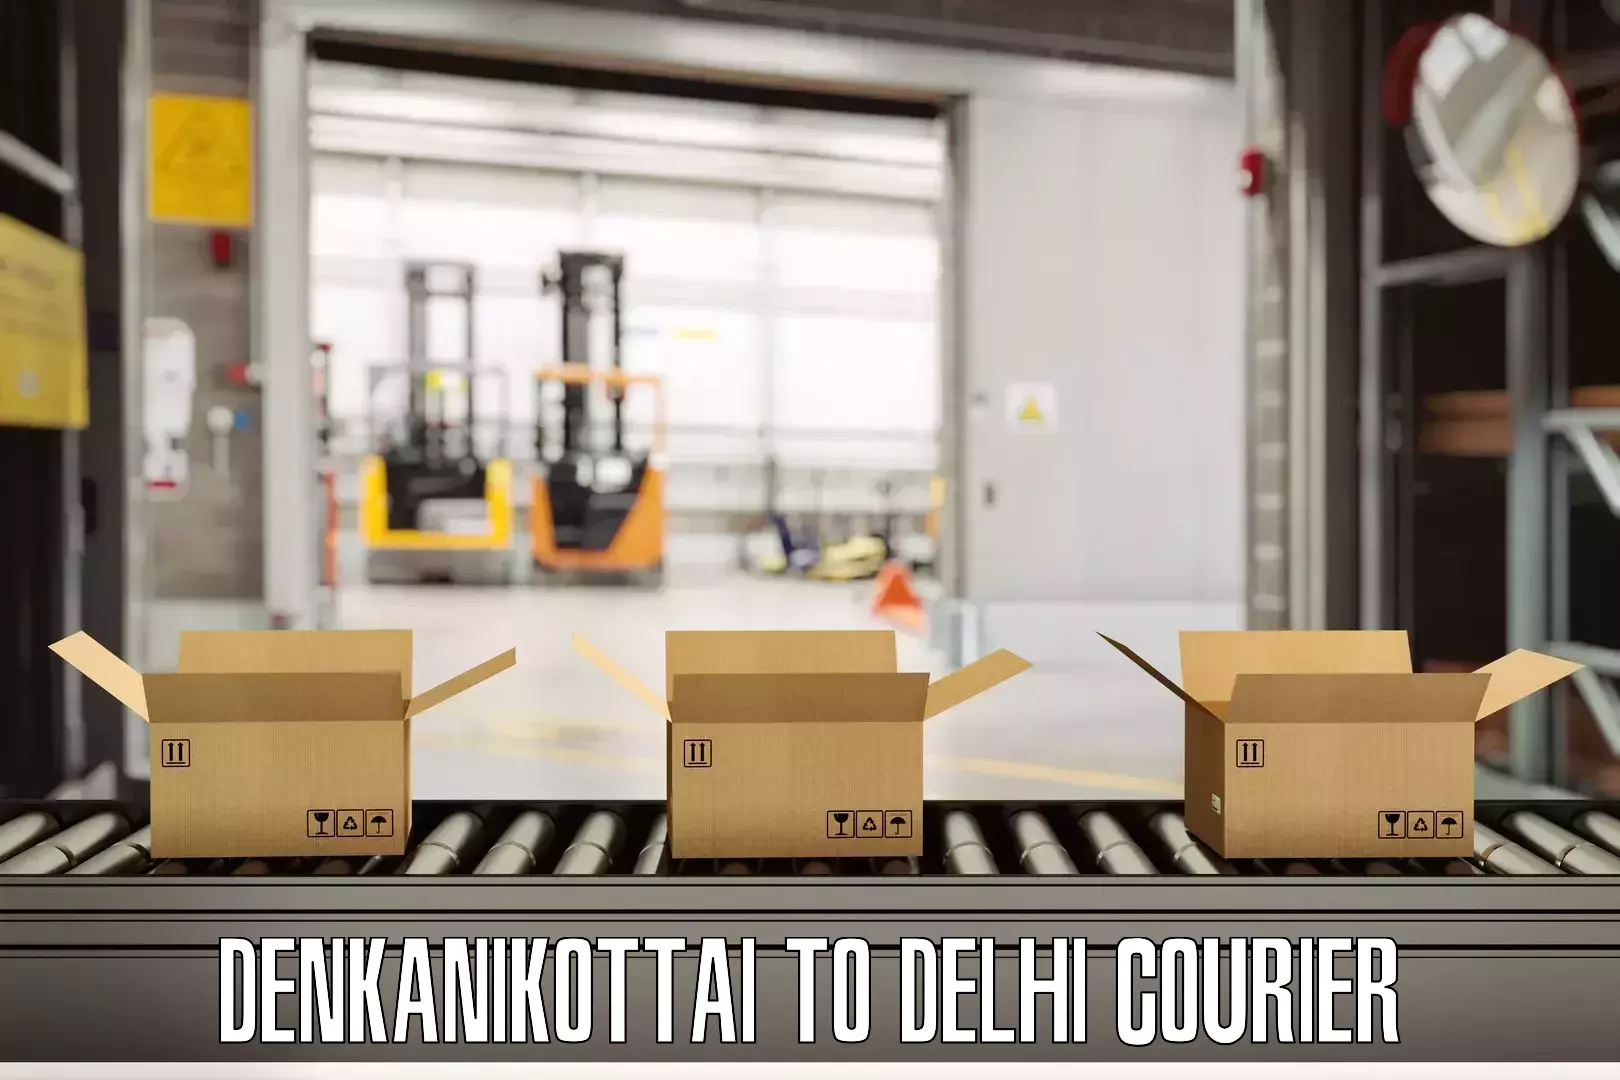 Short distance baggage courier Denkanikottai to Delhi